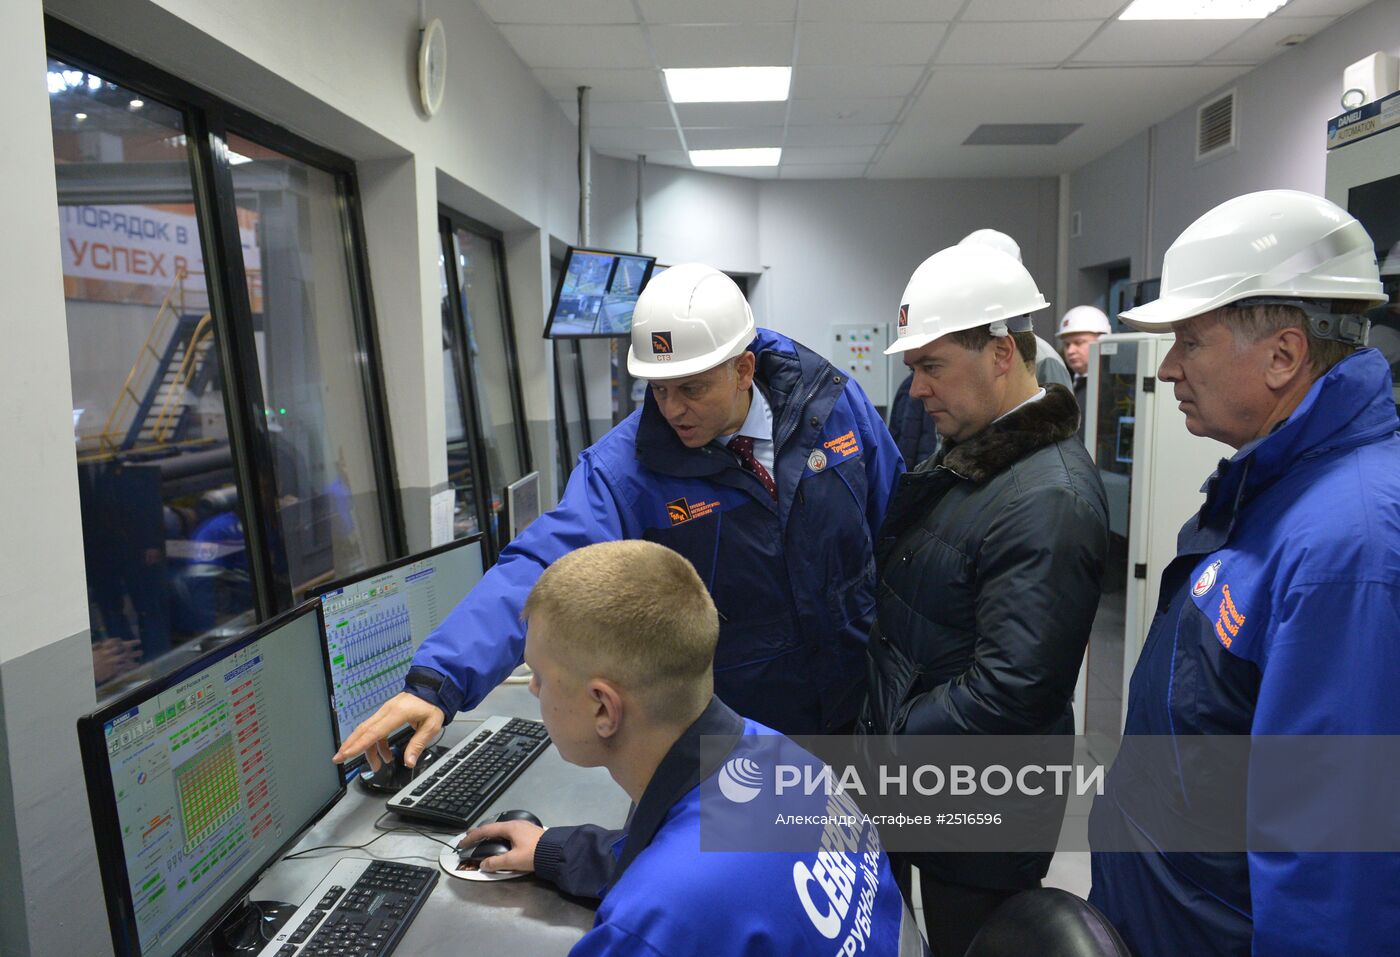 Рабочая поездка Д.Медведева в Свердловскую область